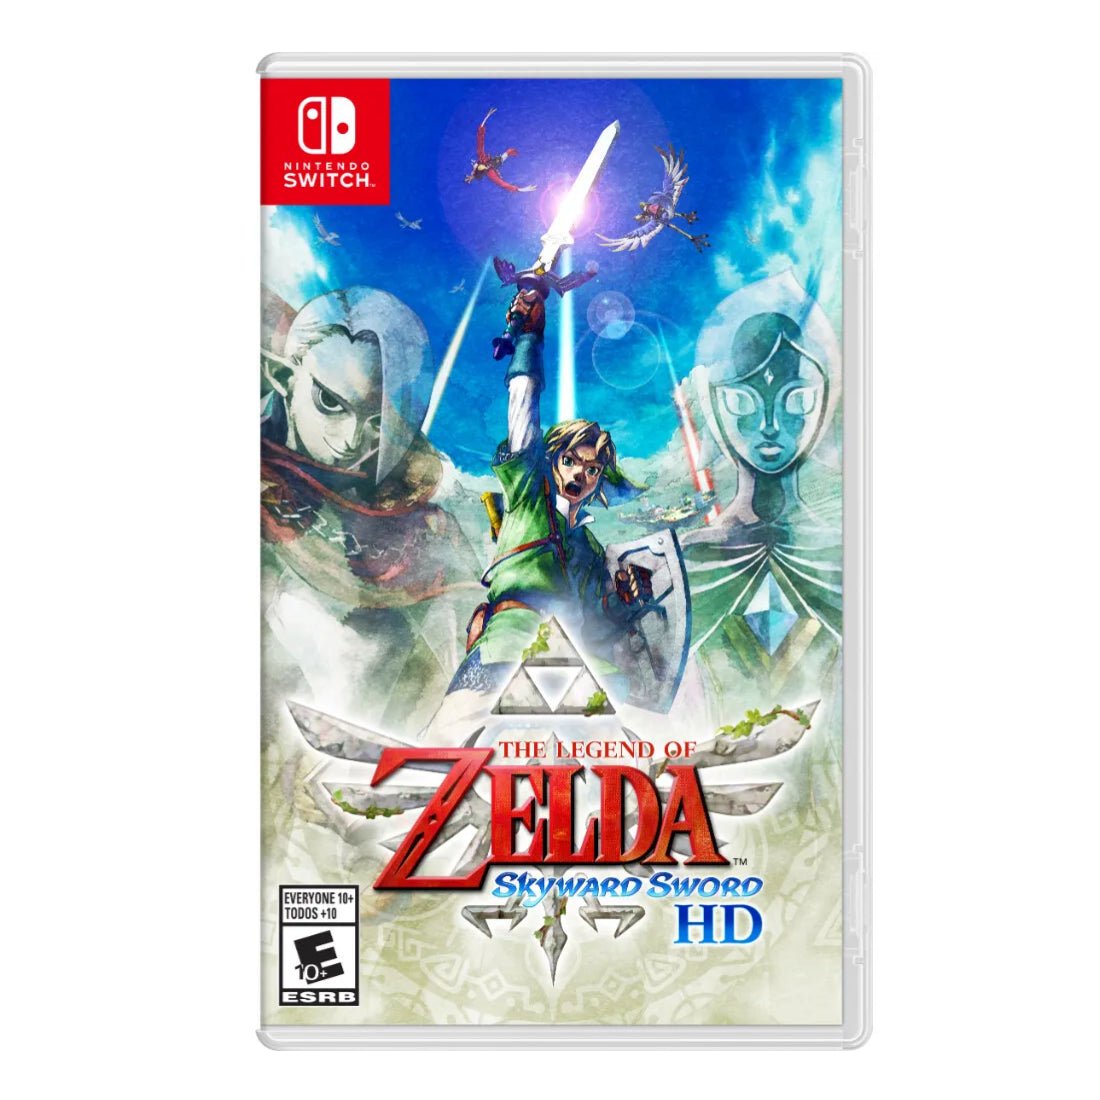 The Legend of Zelda: Skyward Sword HD - Nintendo Switch - لعبة - Store 974 | ستور ٩٧٤